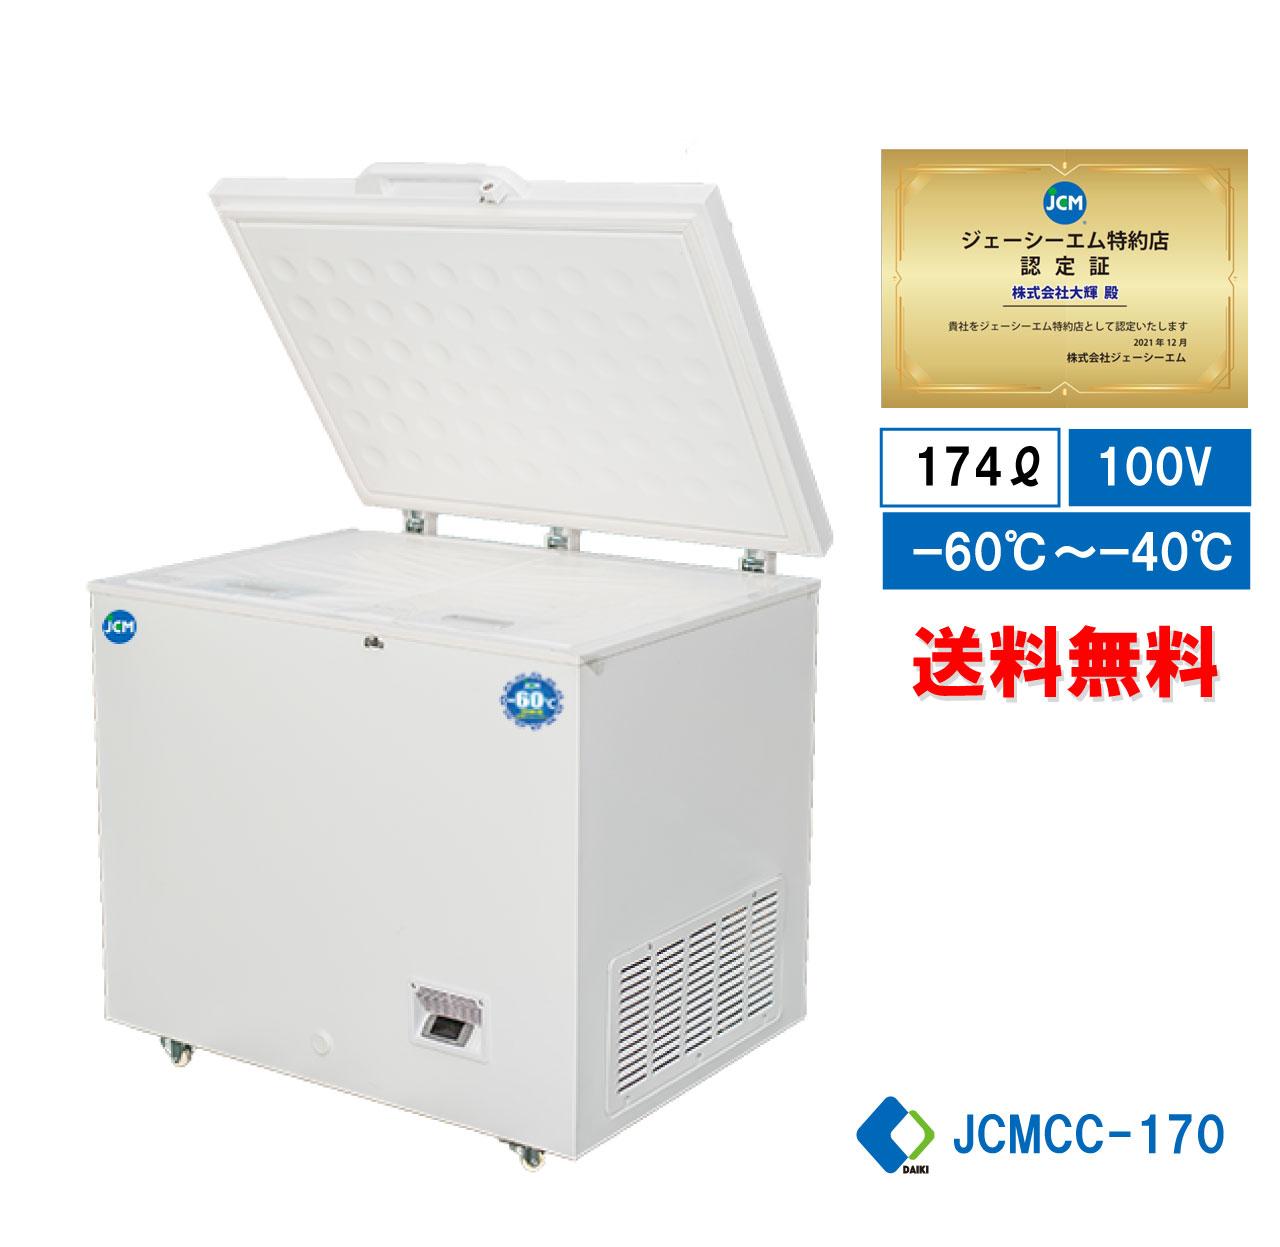 【楽天市場】【JCMCC-162】 業務用 JCM 超低温冷凍ストッカー 